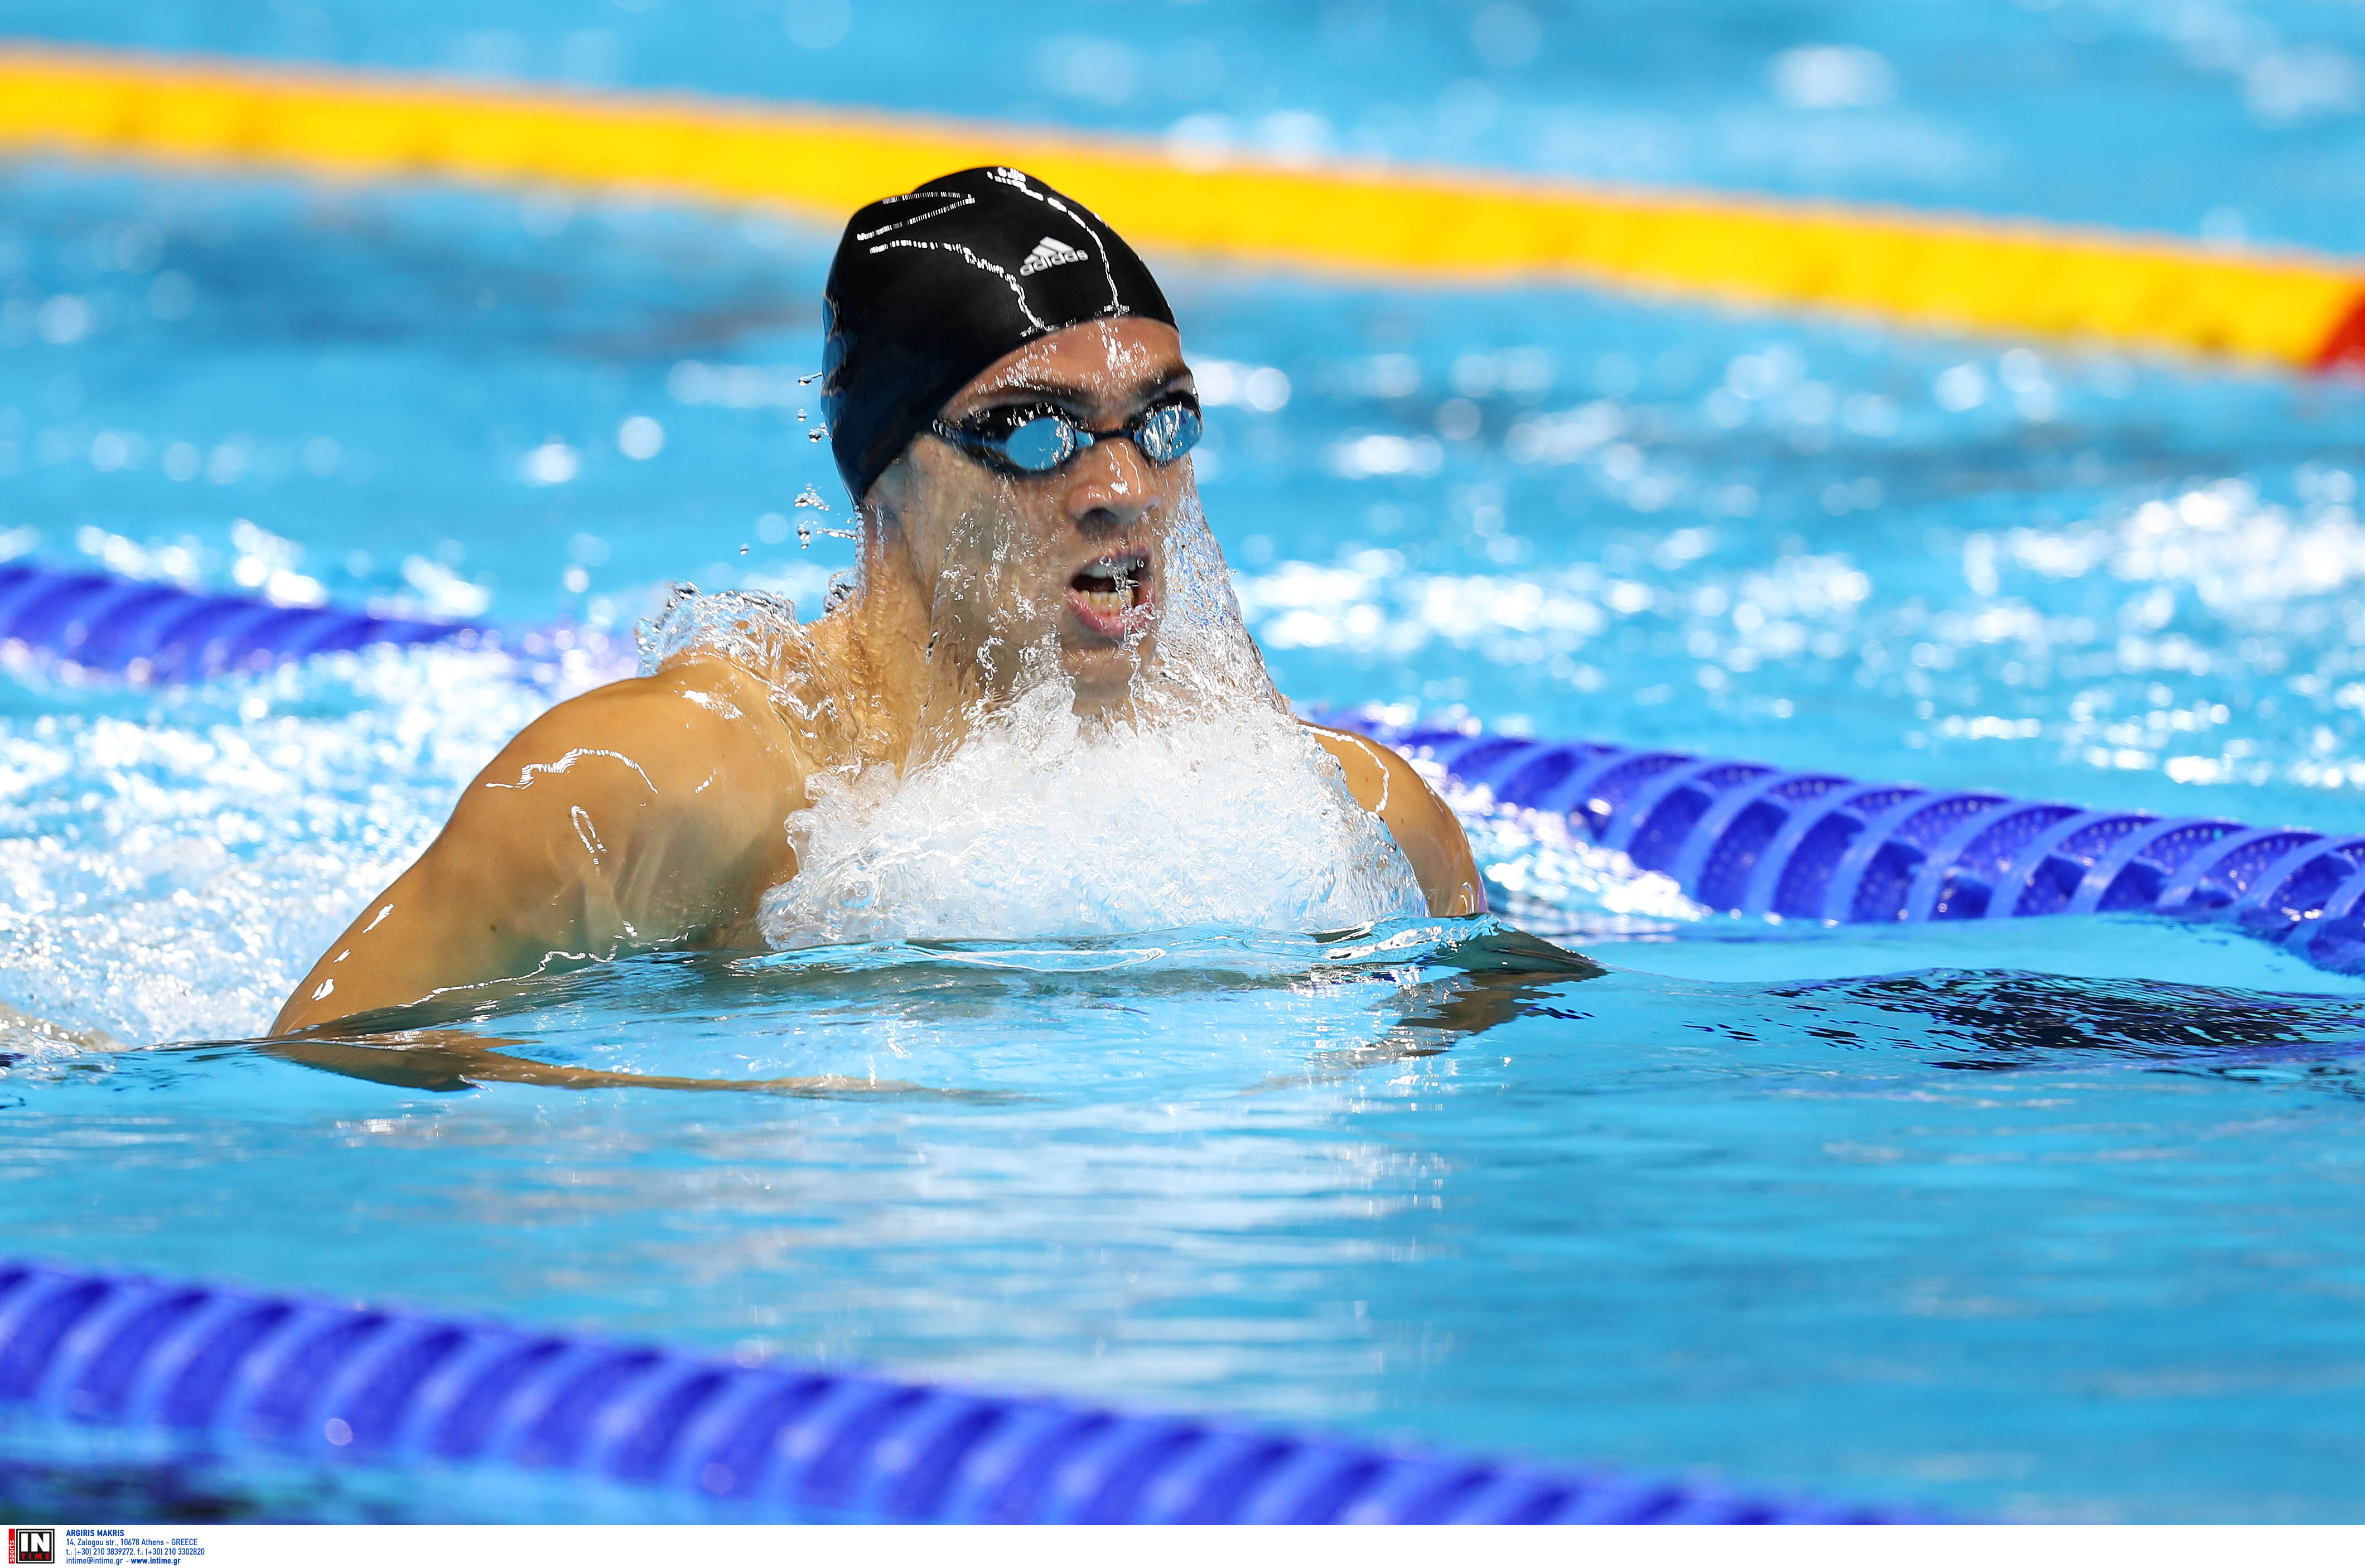 Χάλκινο μετάλλιο για Ντουντουνάκη και Βαζαίο στο ευρωπαϊκό πρωτάθλημα κολύμβησης